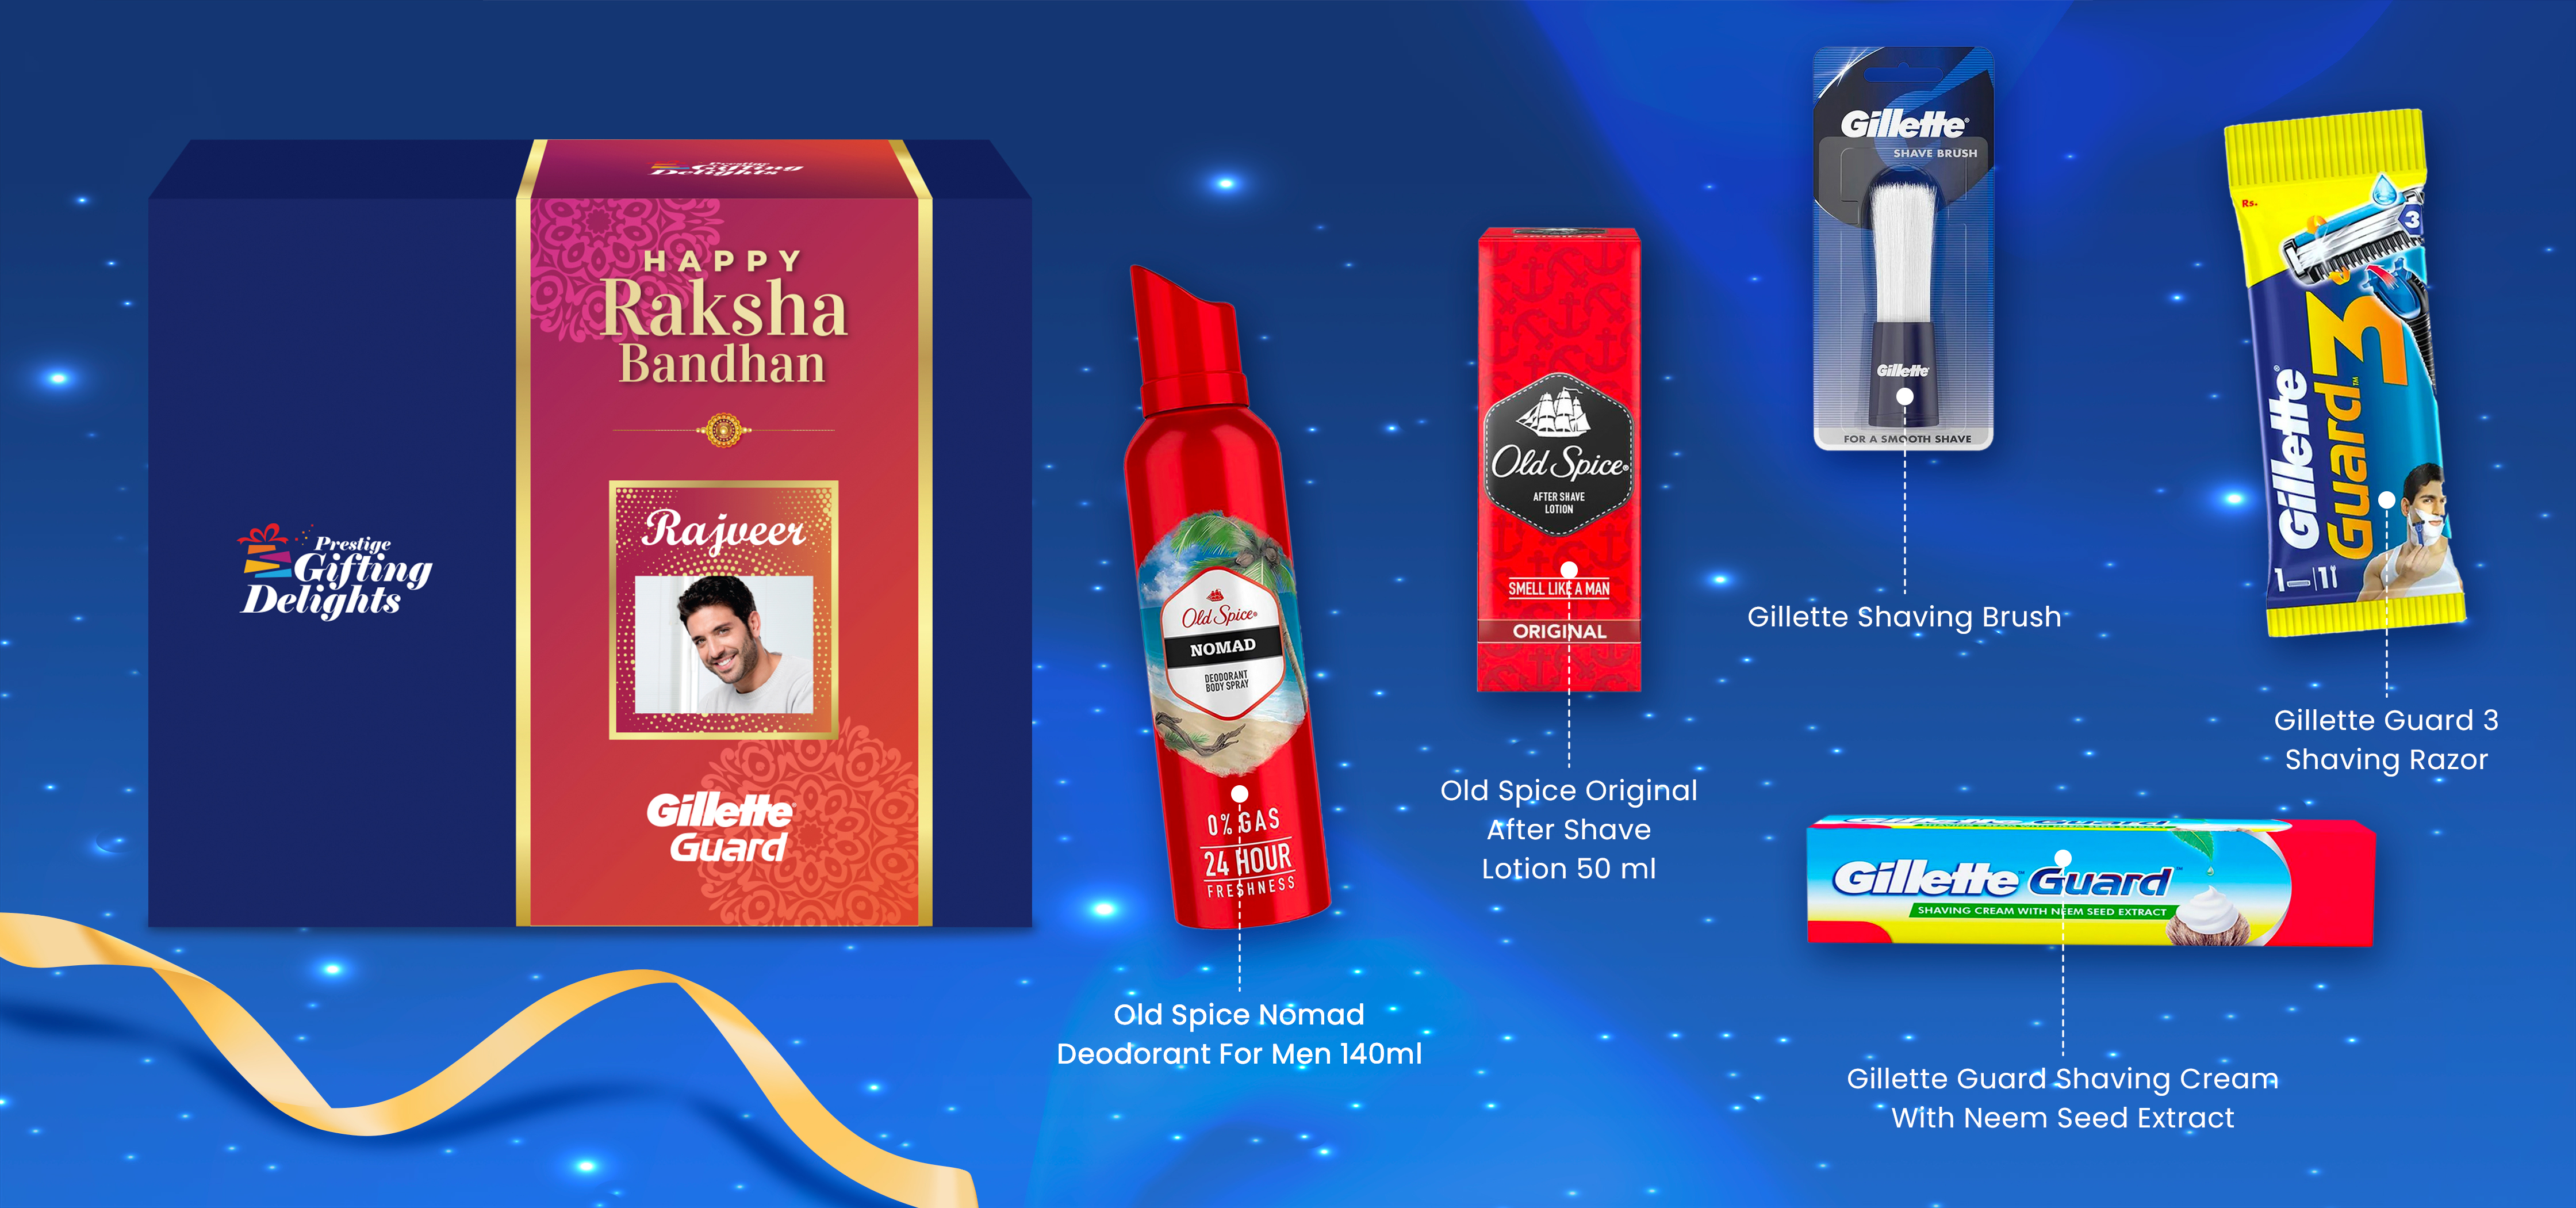 Gillette Guard Complete Shaving Rakhi Gift Pack